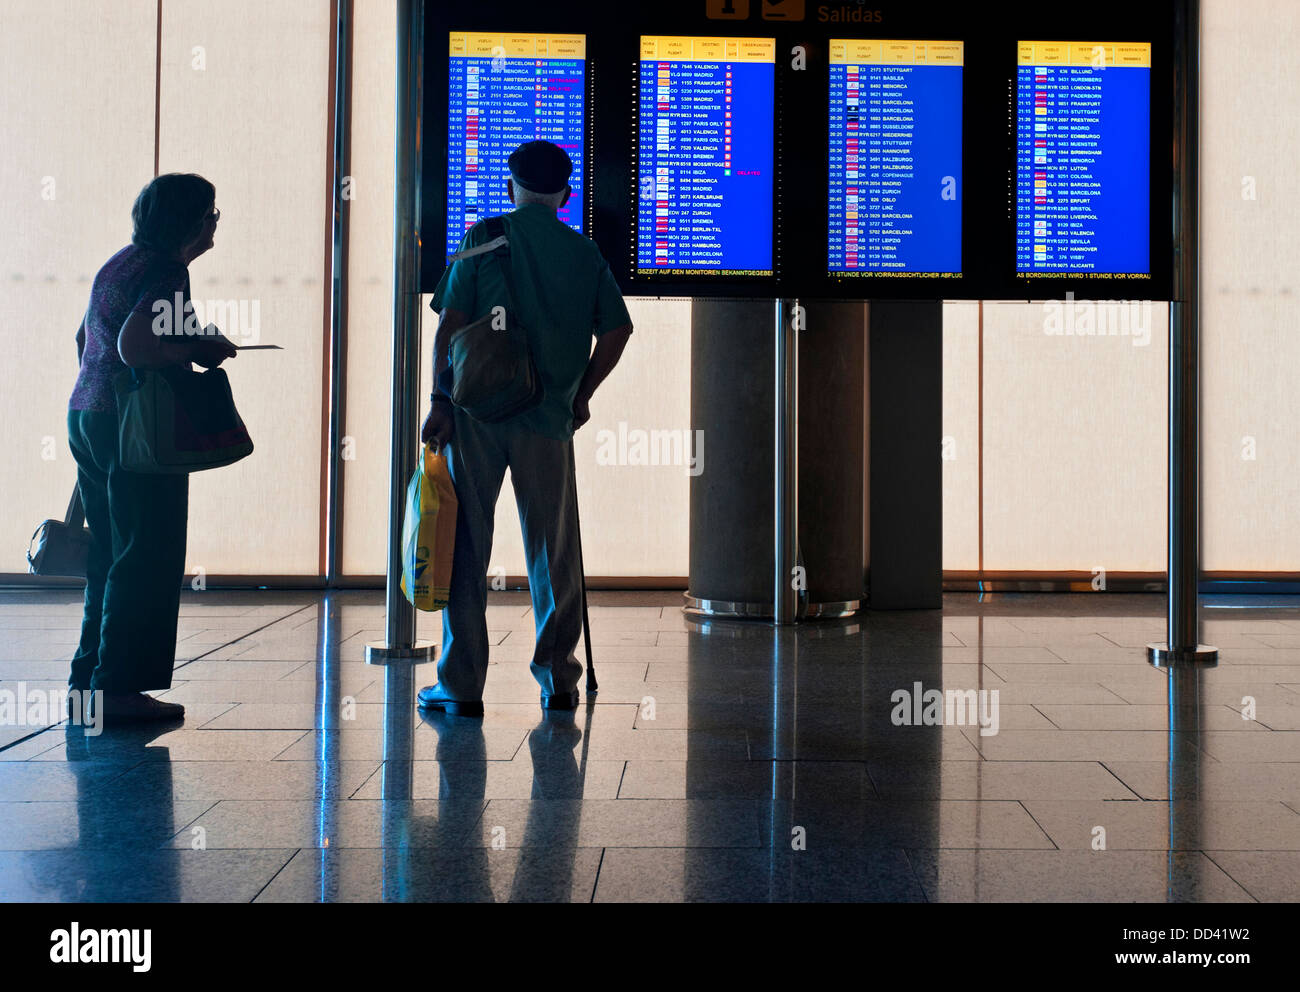 Flughafen Ältere Fluggäste Paare Reisende, die auf der Flughafenhalle stehen und die Bildschirme mit den Abfluginformationen ansehen Stockfoto